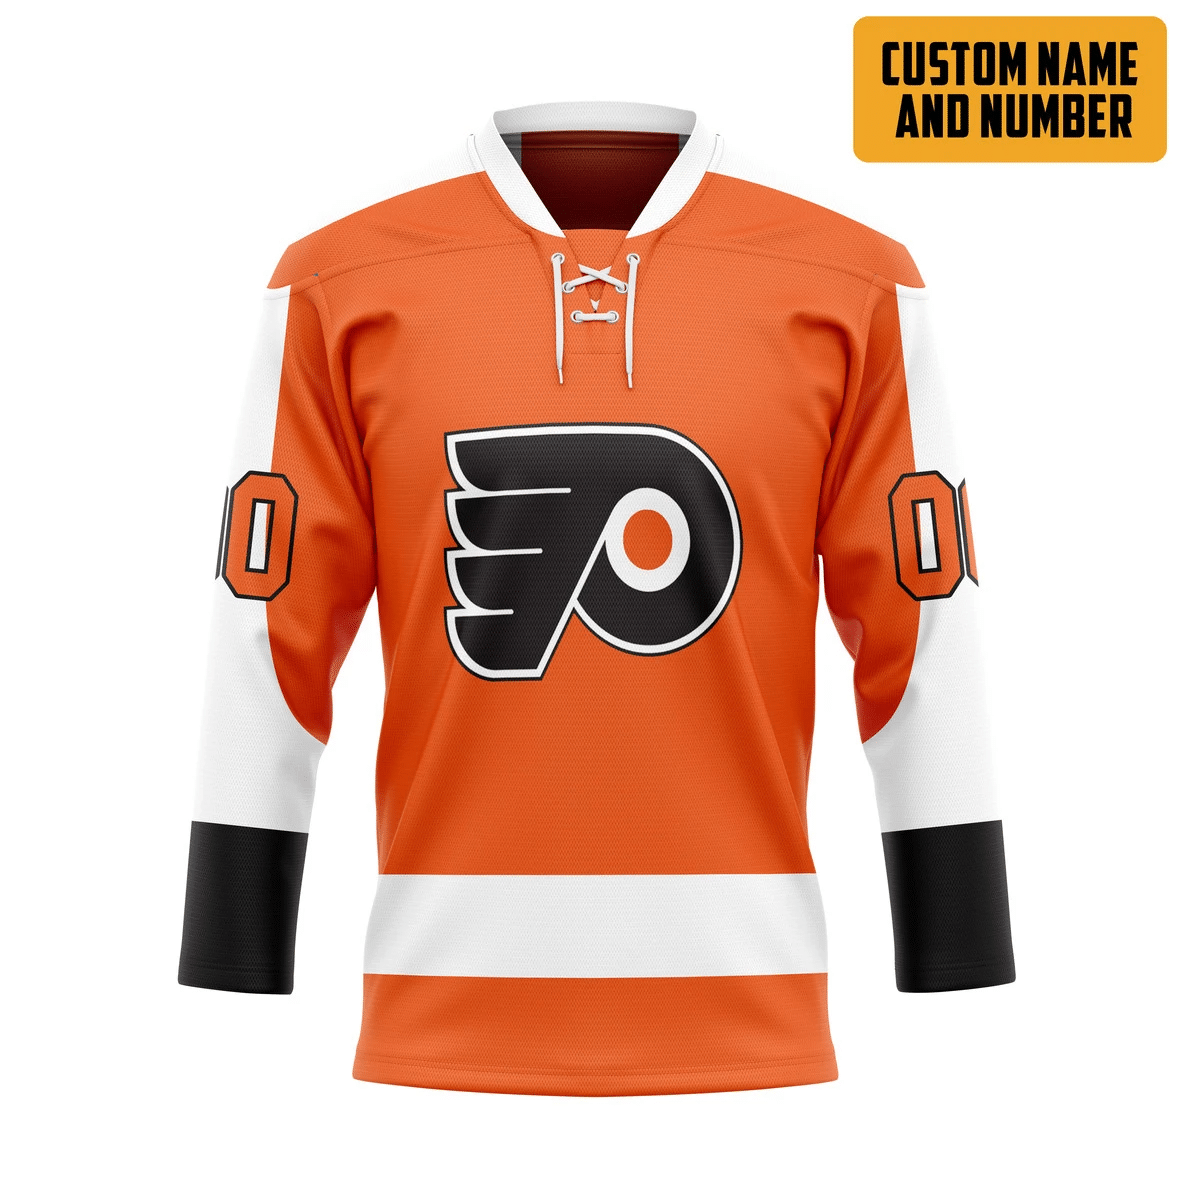 It's only $50 so don't miss out - Be sure to pick up a new hockey shirt today! 395